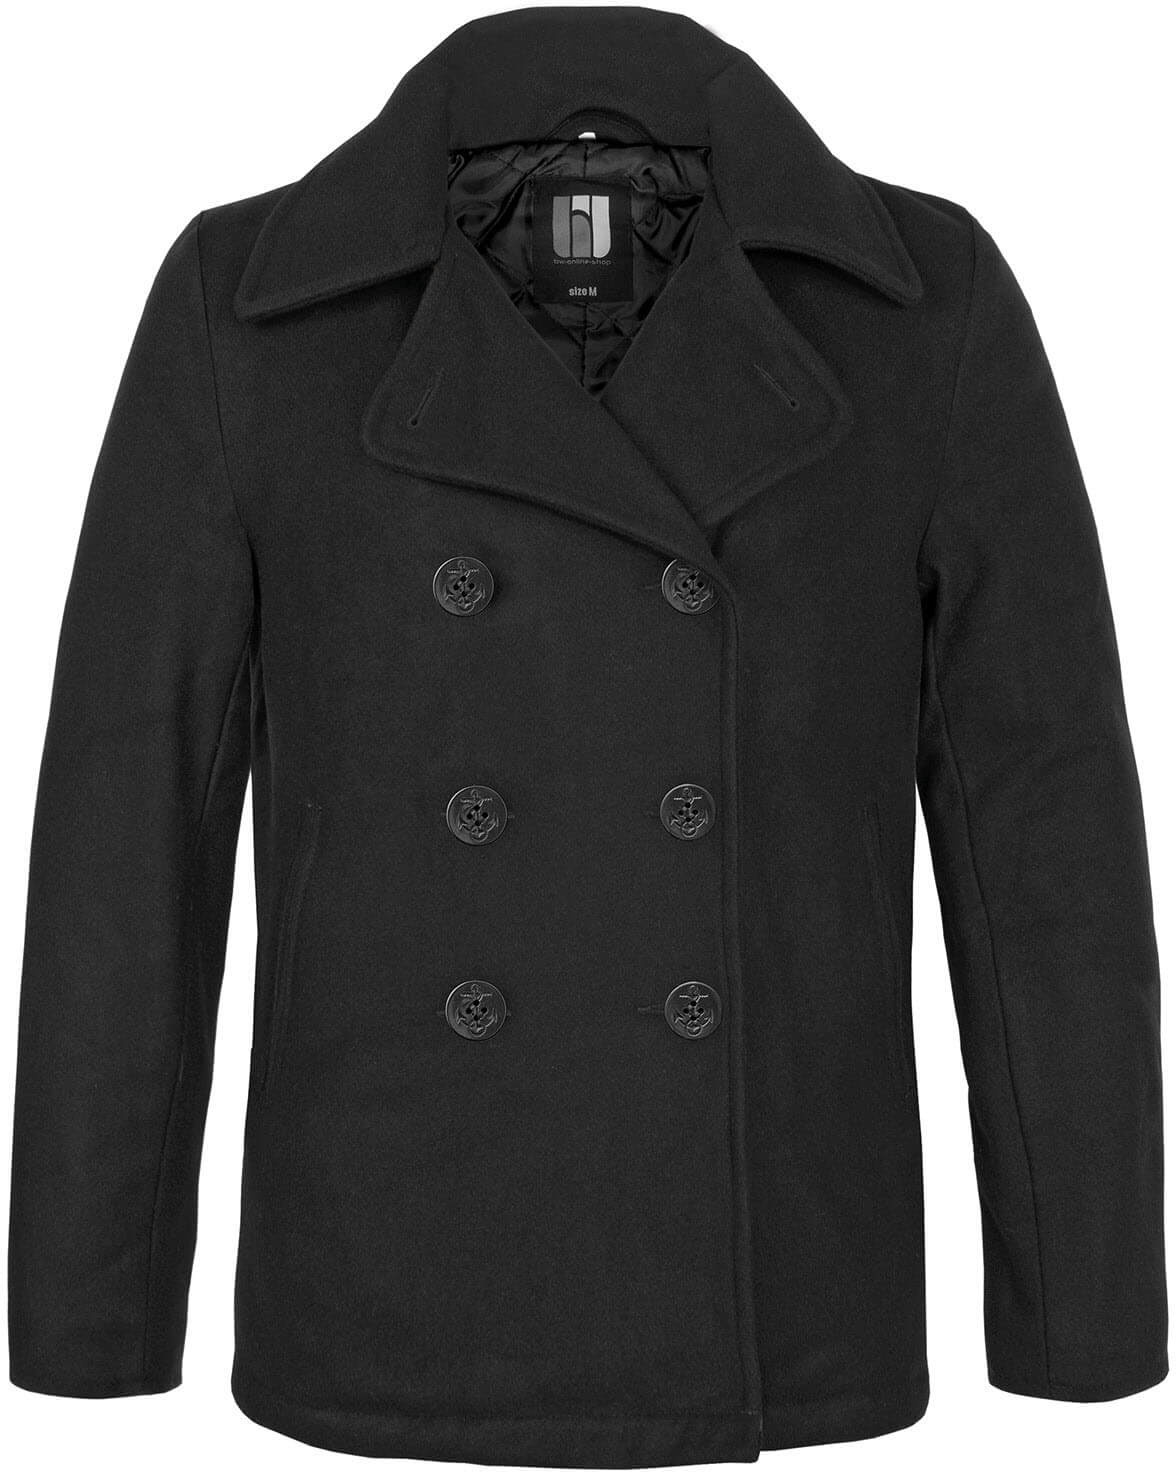 bw-online-shop Navy Pea Coat Mantel schwarz, Größe 4XL